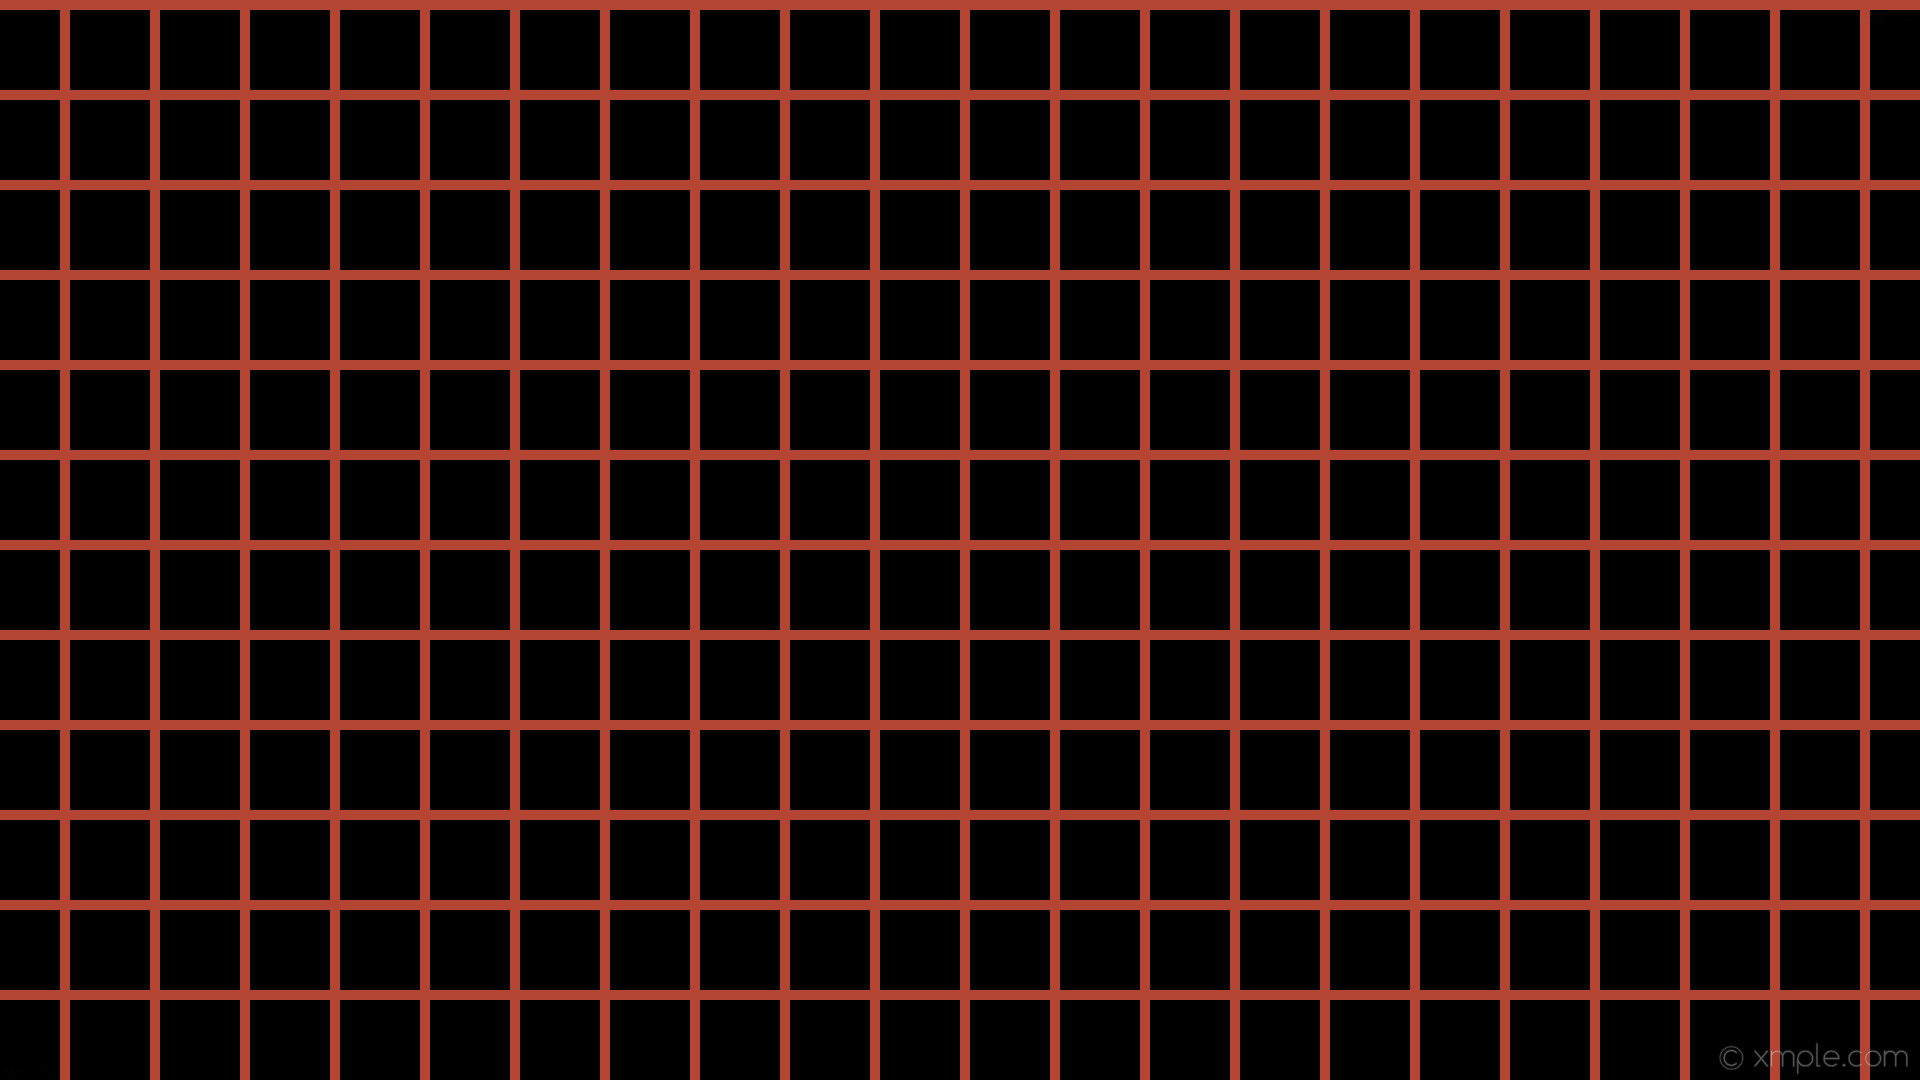 1920x1080 wallpaper graph paper black orange grid tomato #000000 #ff6347 0Â° 10px 90px